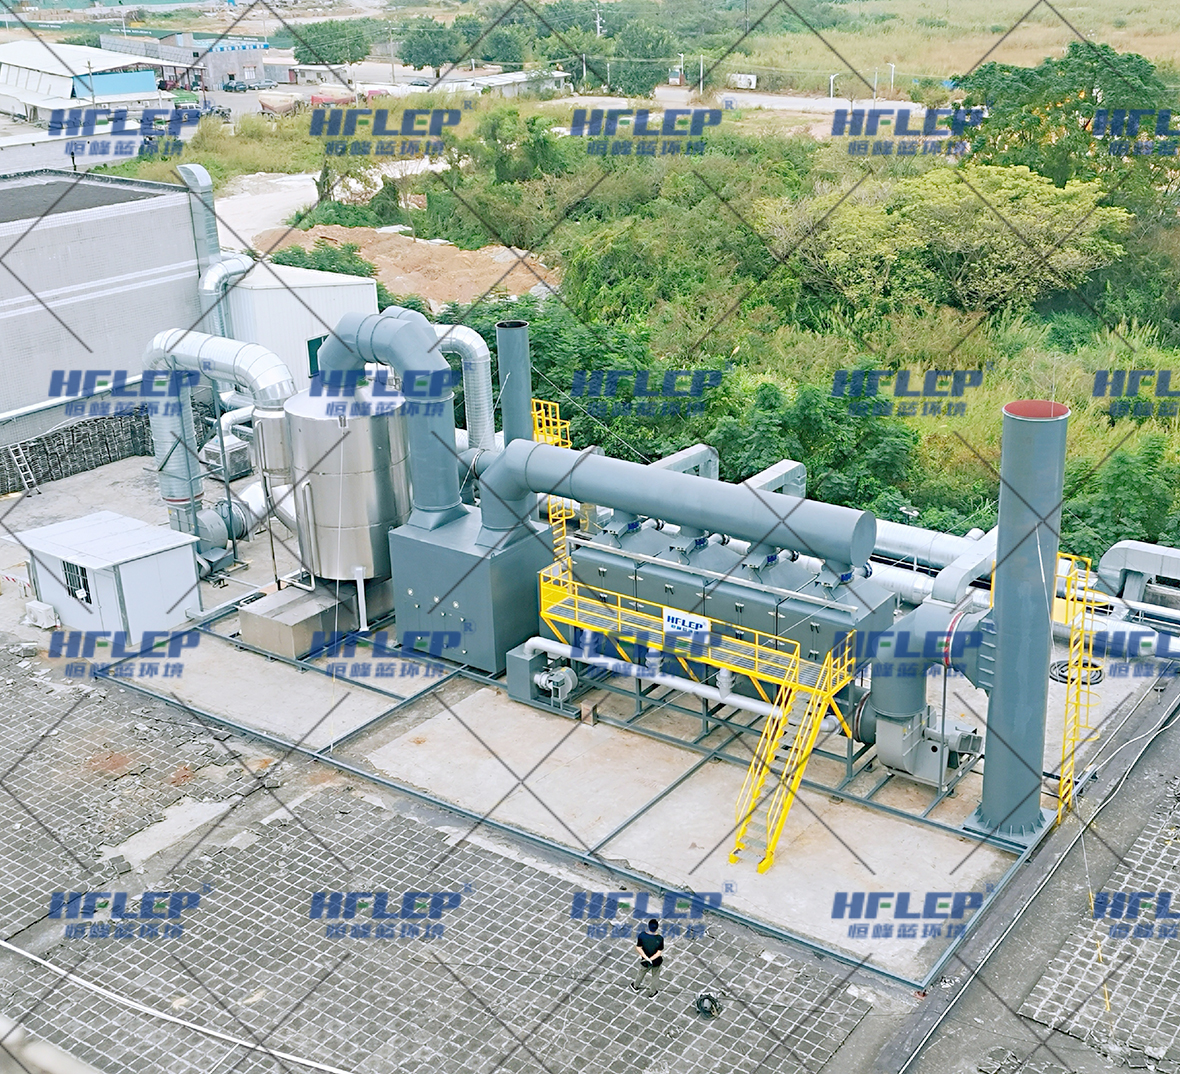 惠州某上市新材料公司-活性炭吸附脫附催化燃燒設備案列